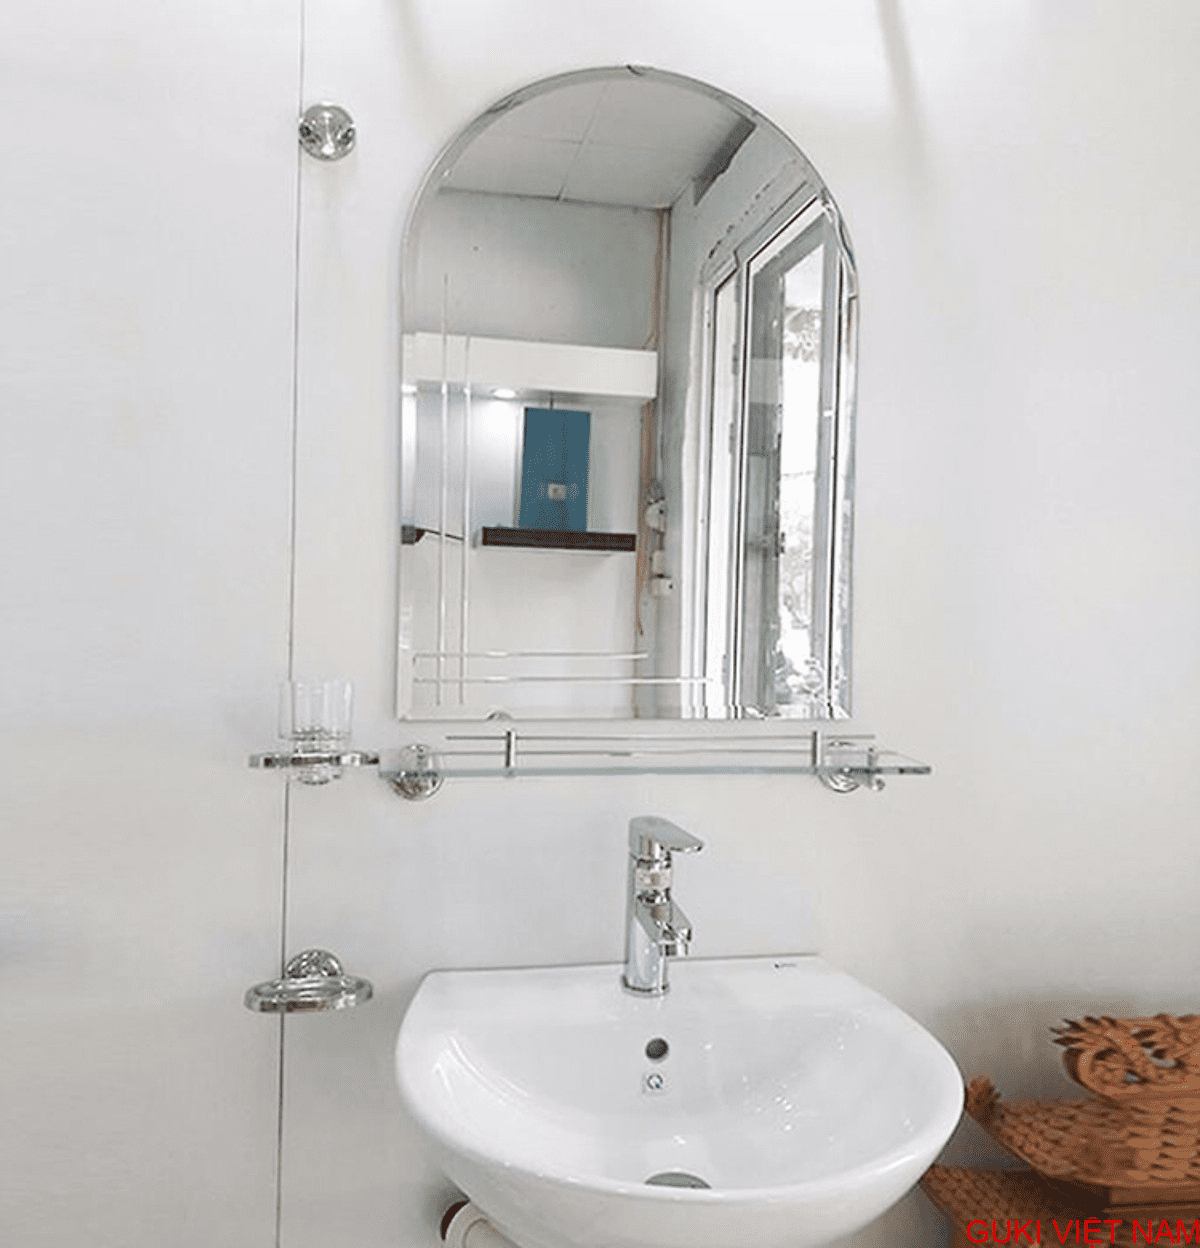 Kệ kính phòng tắm: Năm 2024, phòng tắm trở thành một không gian phải đảm bảo cả sự tiện nghi và thẩm mỹ. Chính vì vậy, kệ kính phòng tắm đang trở thành một trong những lựa chọn được ưa chuộng hiện nay. Với hình ảnh này, bạn sẽ tìm thấy những mẫu kệ kính phòng tắm đẹp và đa dạng.